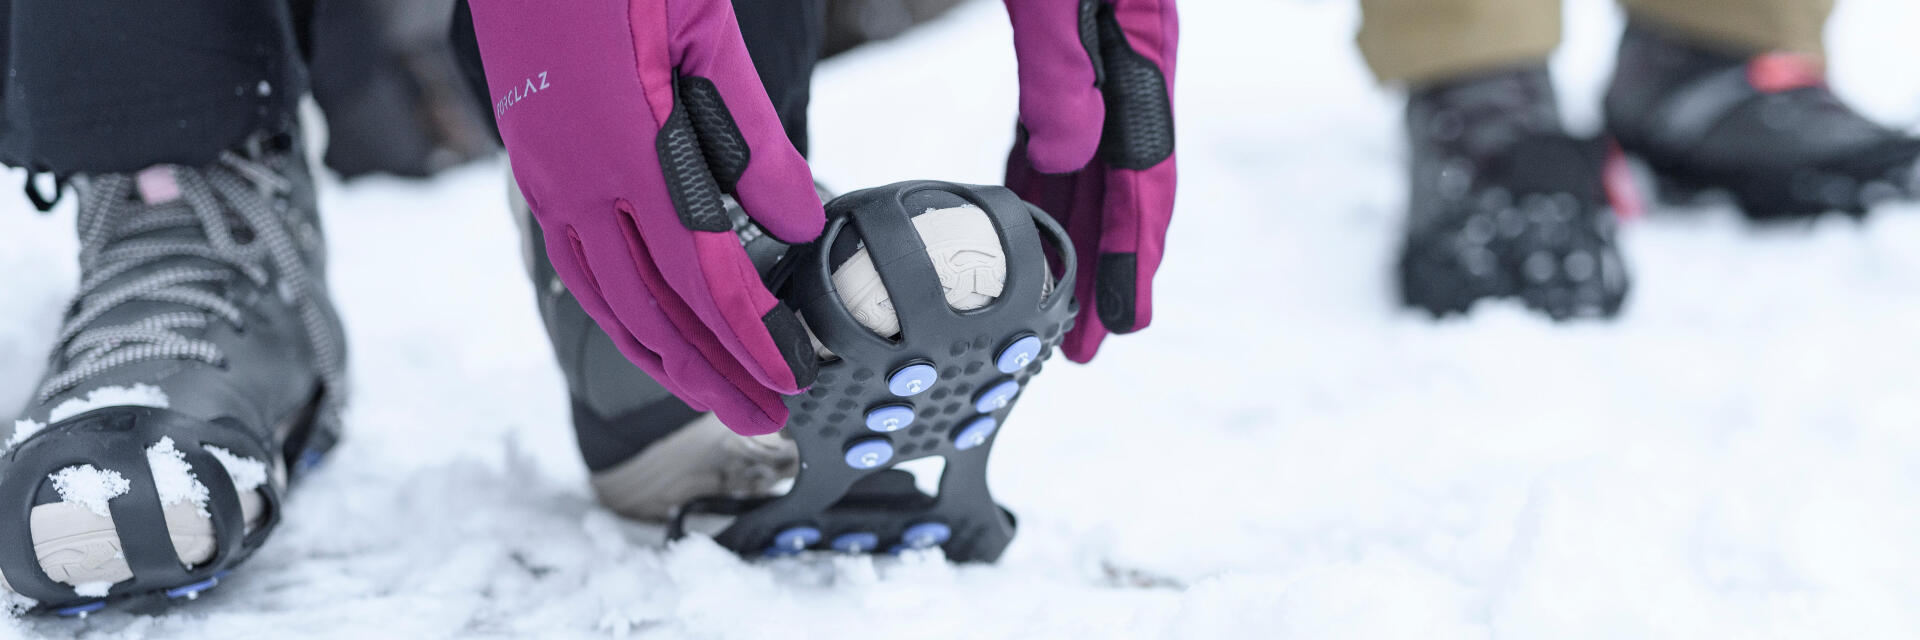 SH500 x-warm snow hiking boots